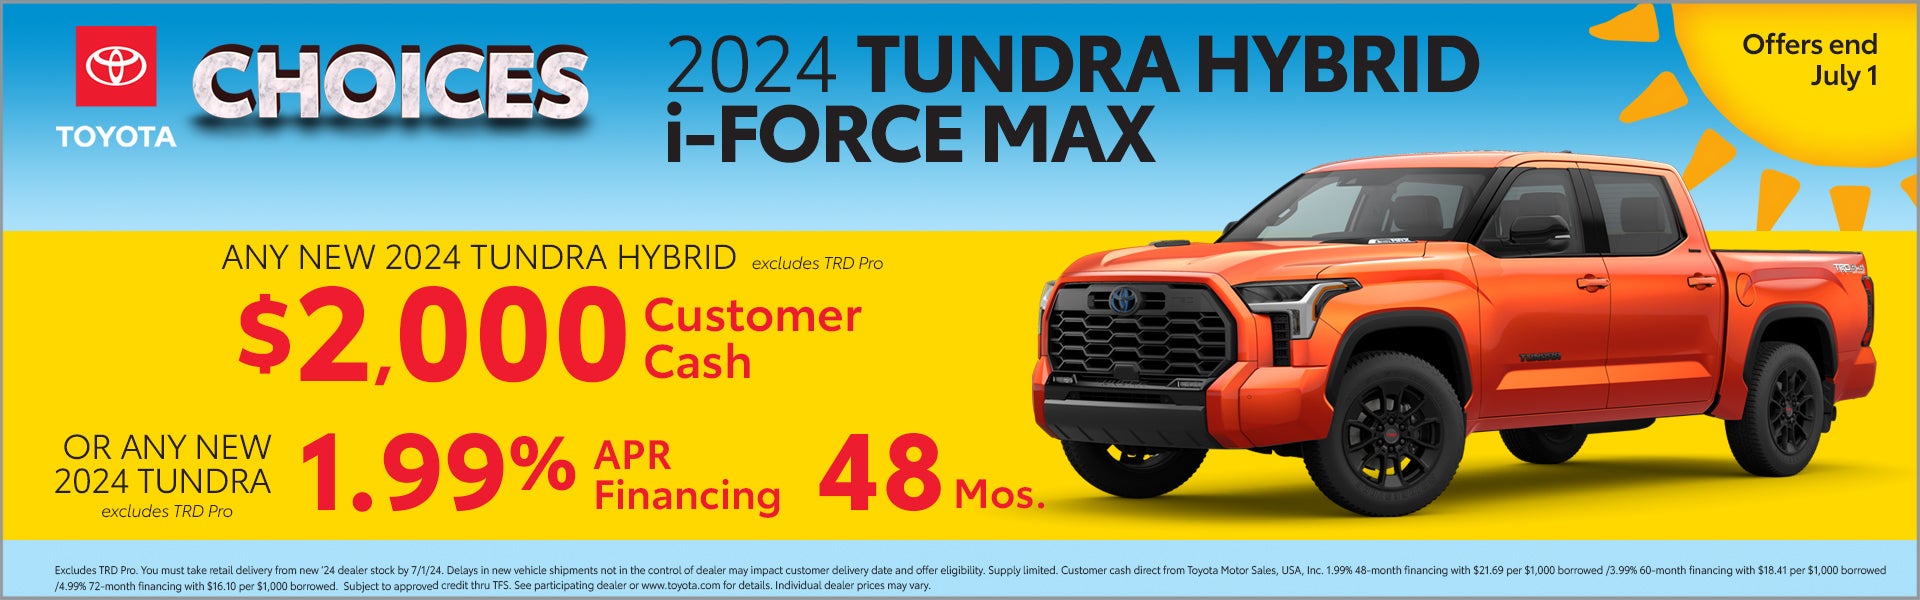 2024 Toyota Tundra Hybrid Offer